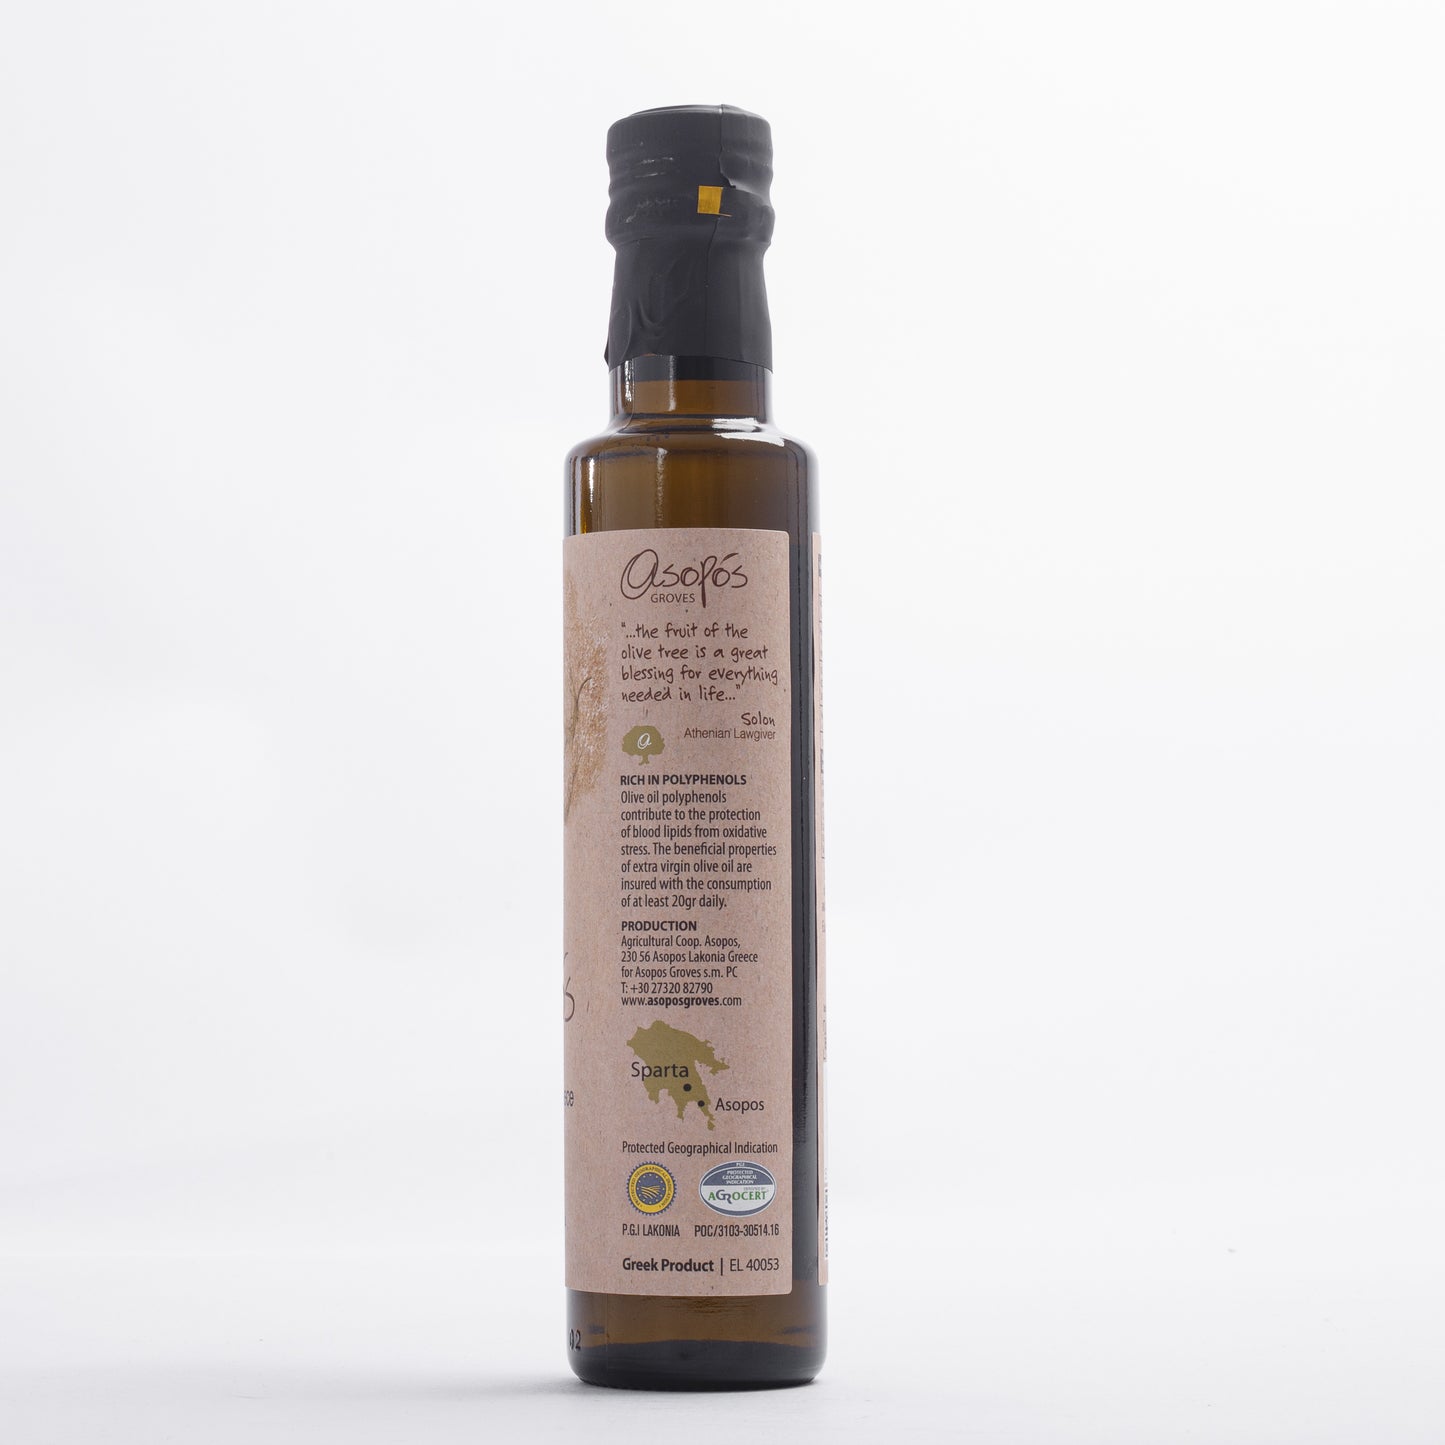 Asopos Groves Extra Virgin Olive Oil bottle 250ml